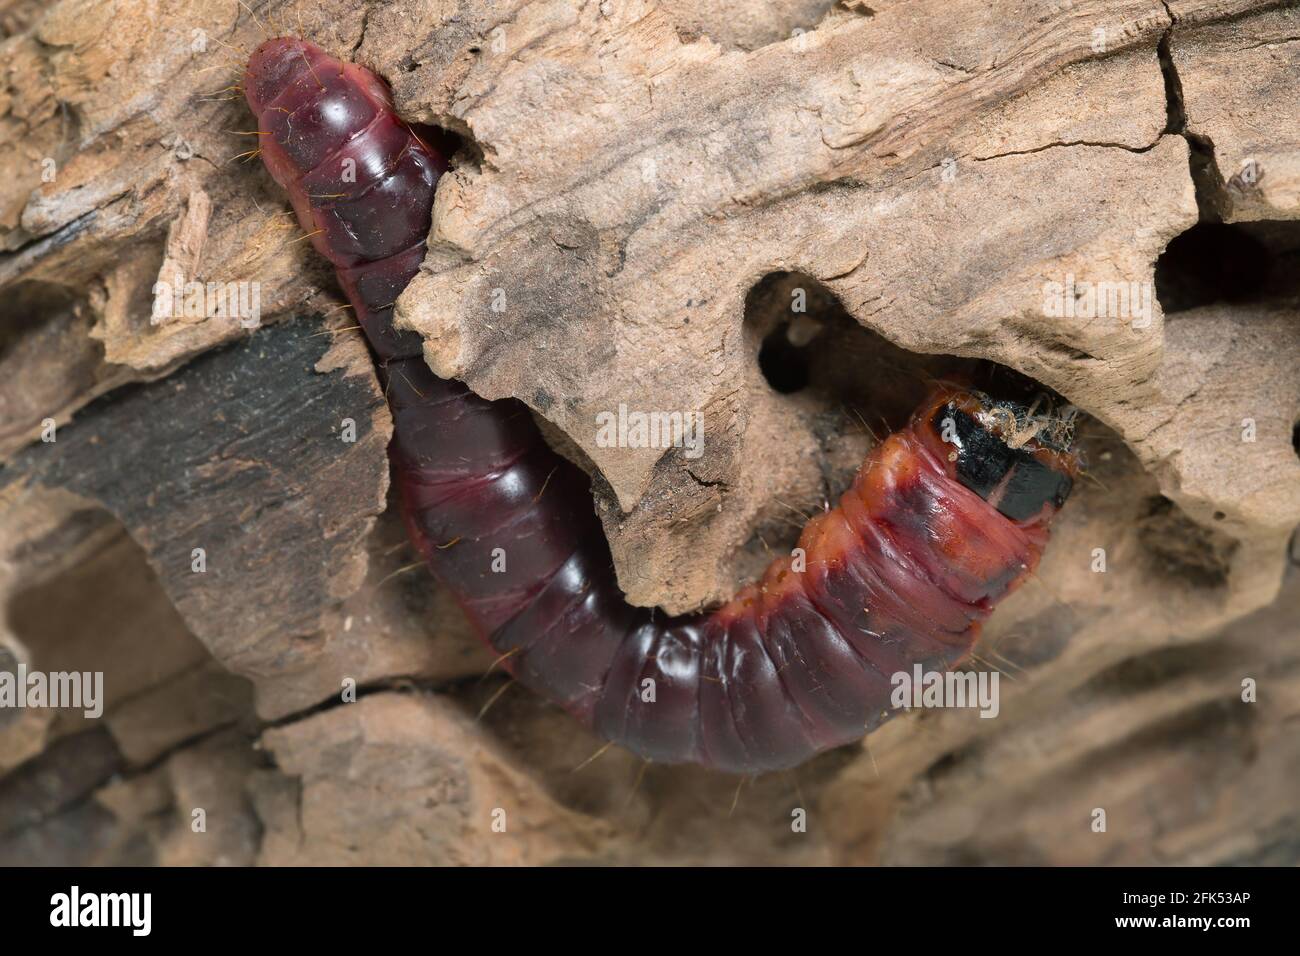 Goat moth, Cossus cossus larva on wood Stock Photo